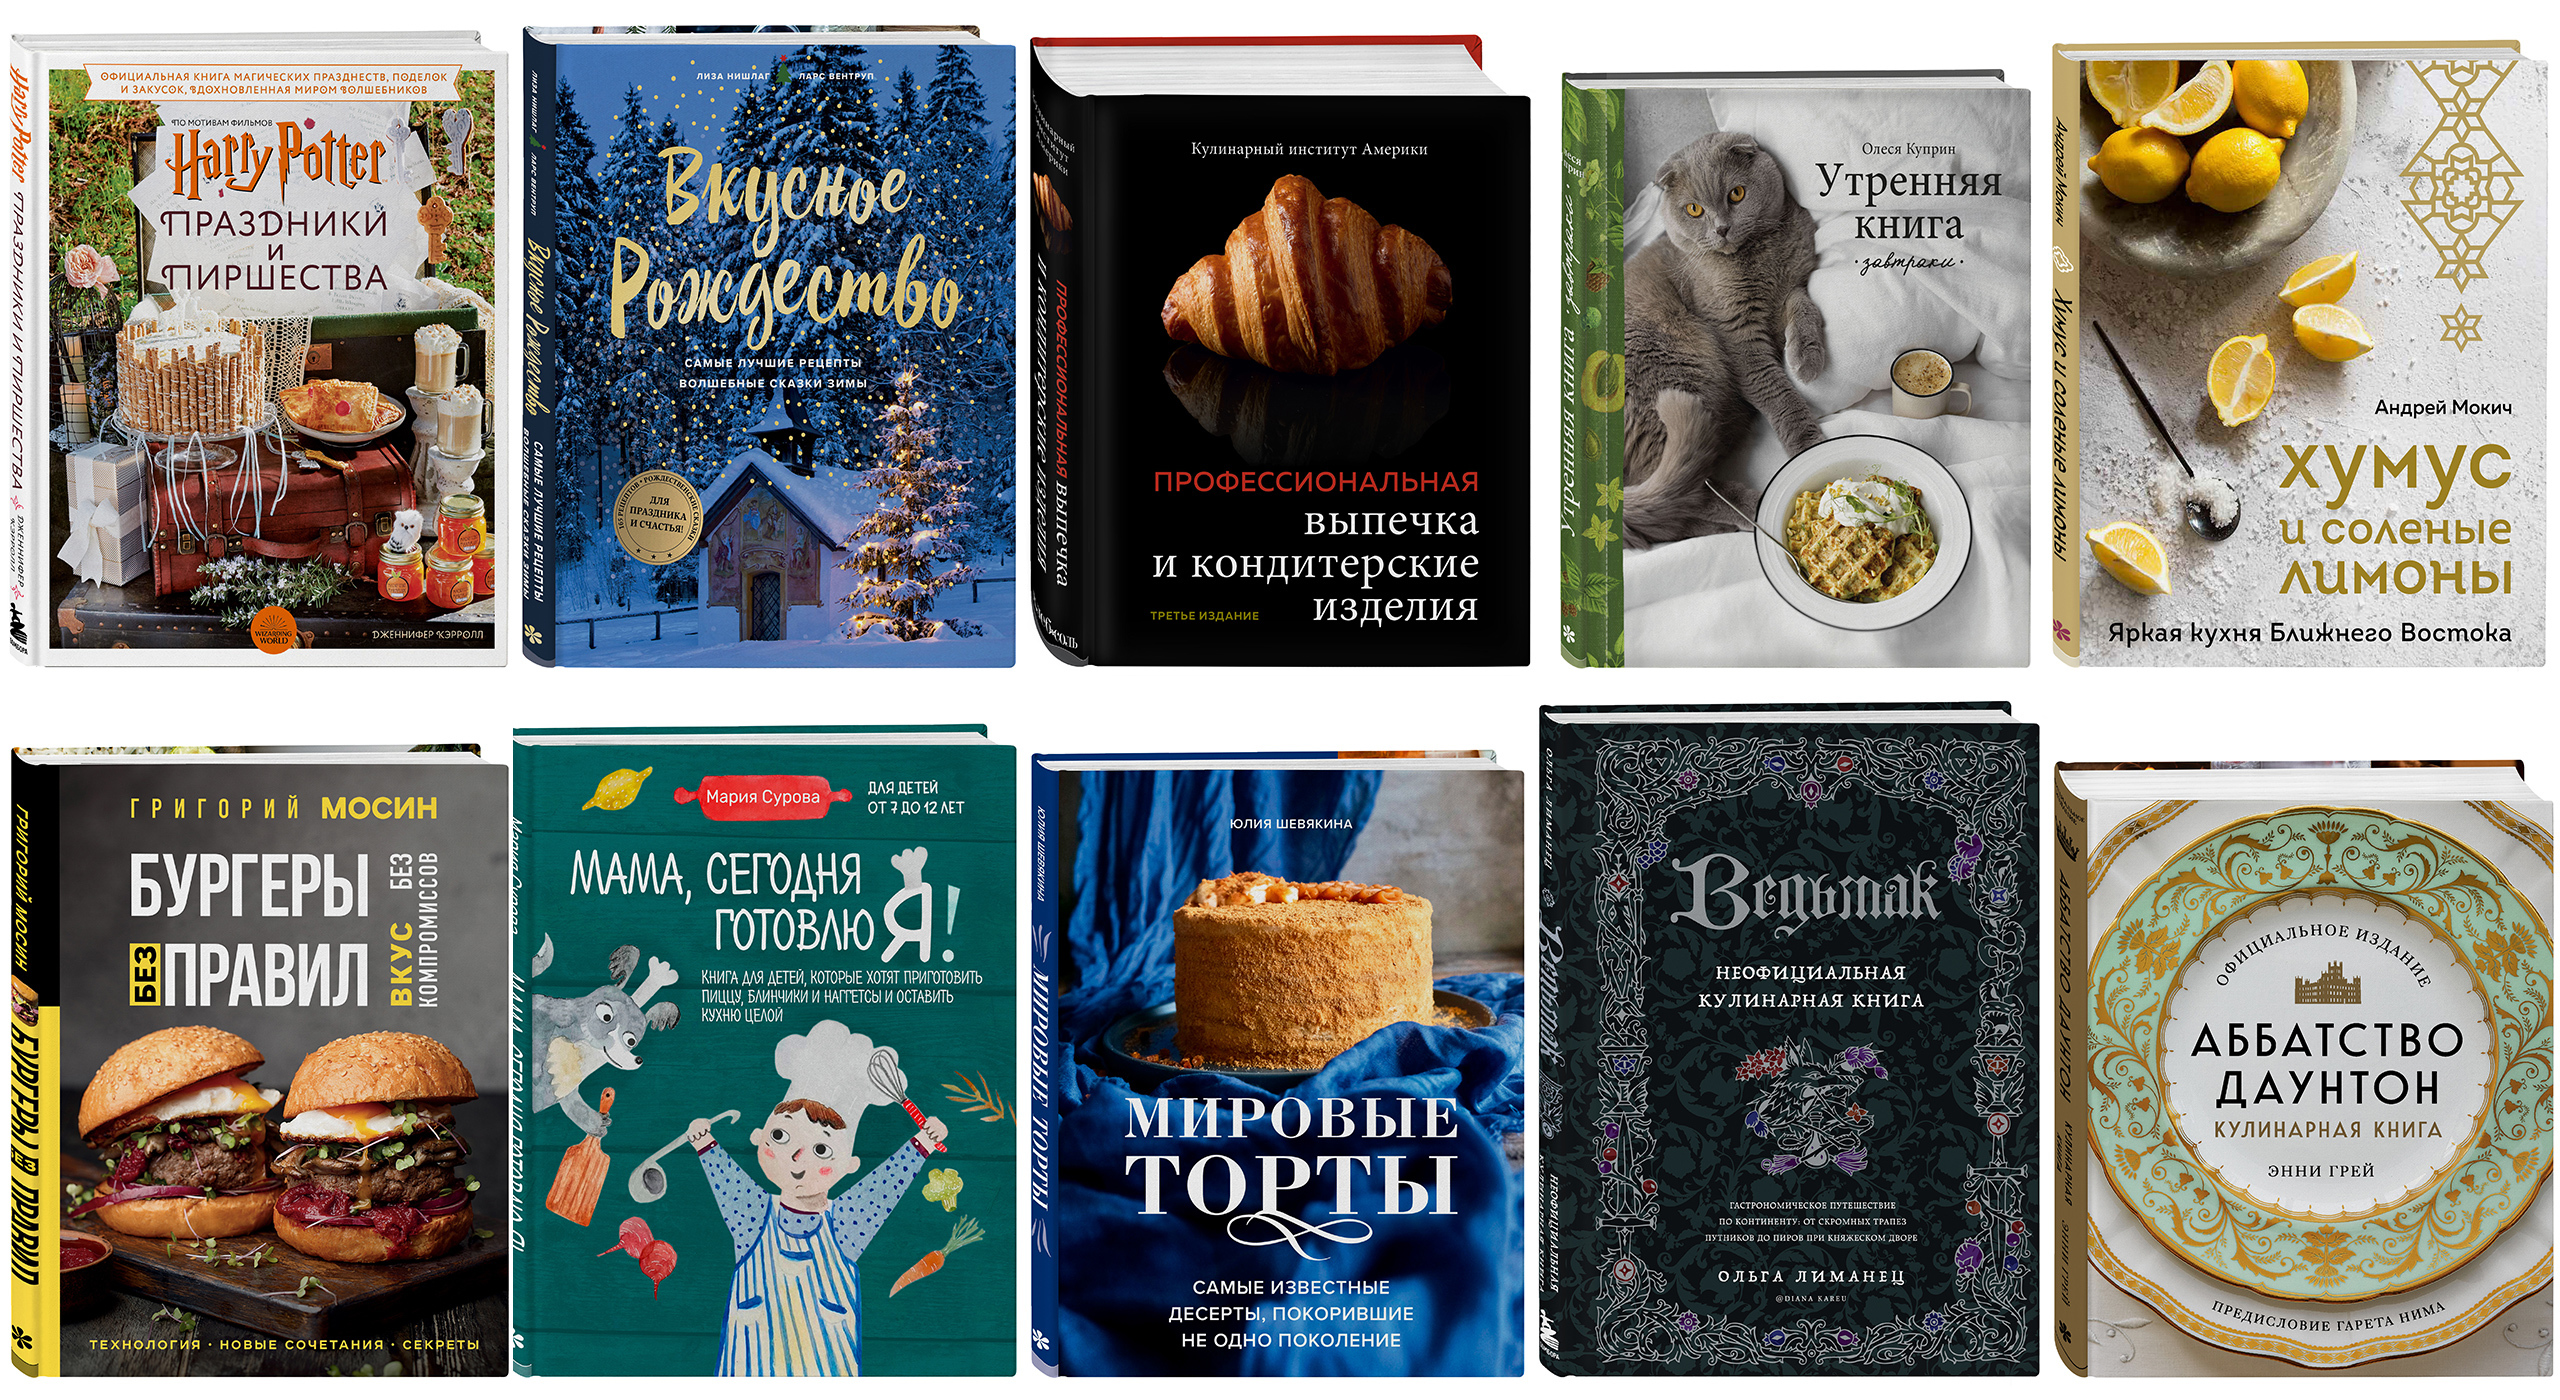 10 новых интересных кулинарных книг